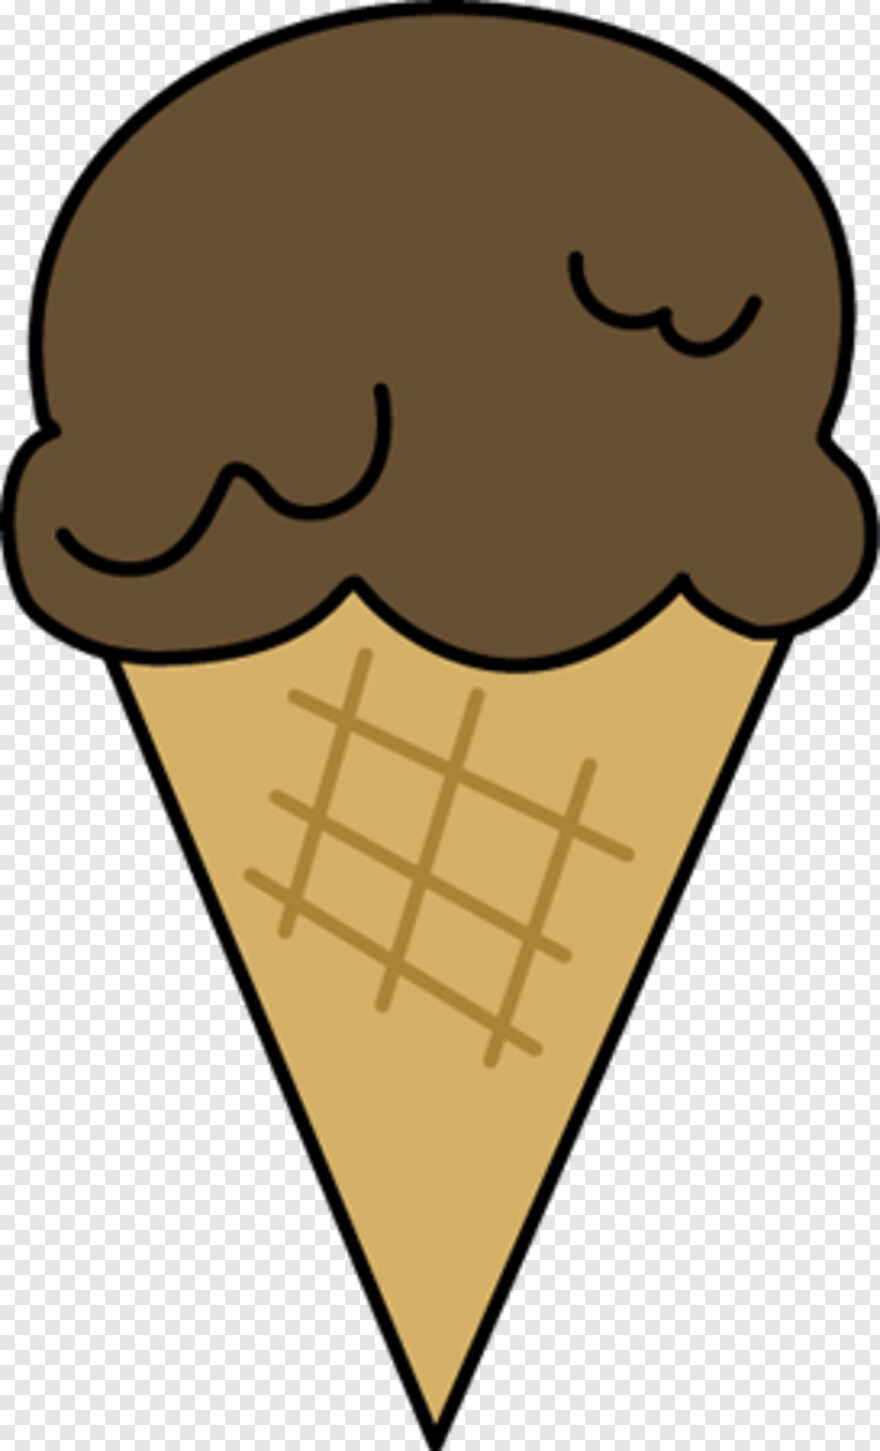 ice-cream-cone # 471687